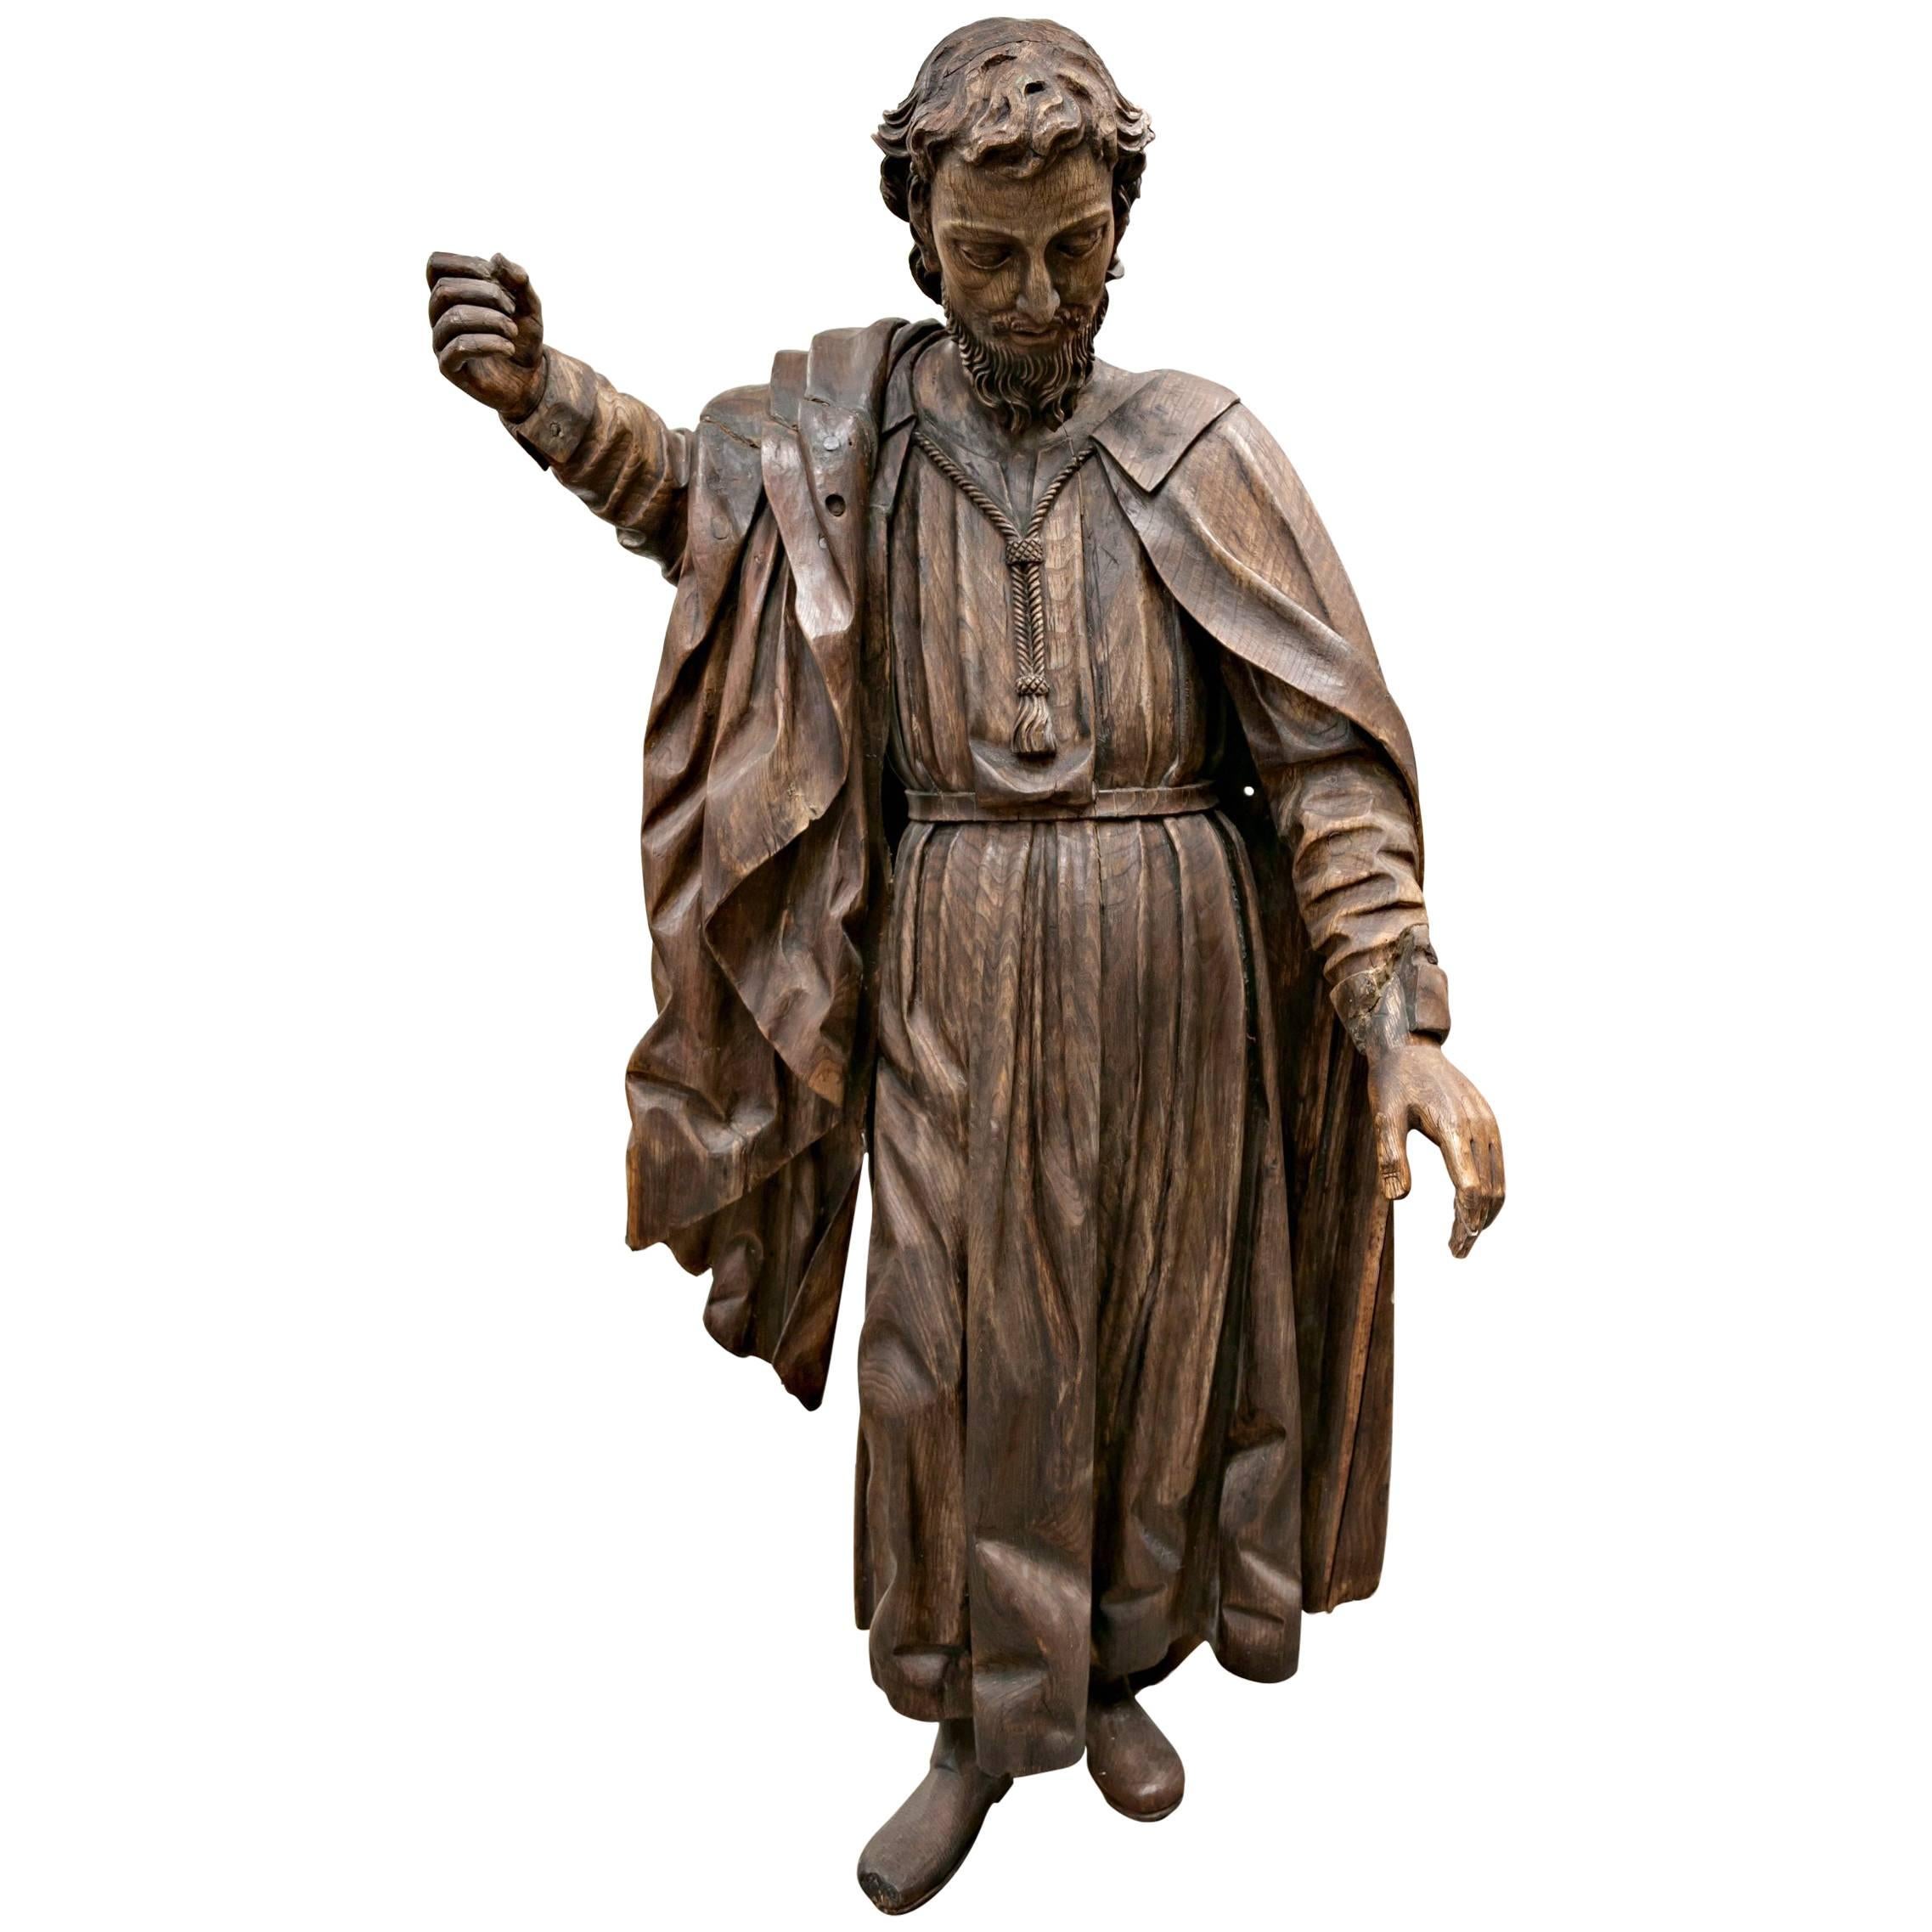 Seltene, lebensgroße geschnitzte Holzstatue des heiligen Joseph aus dem 18. Jahrhundert